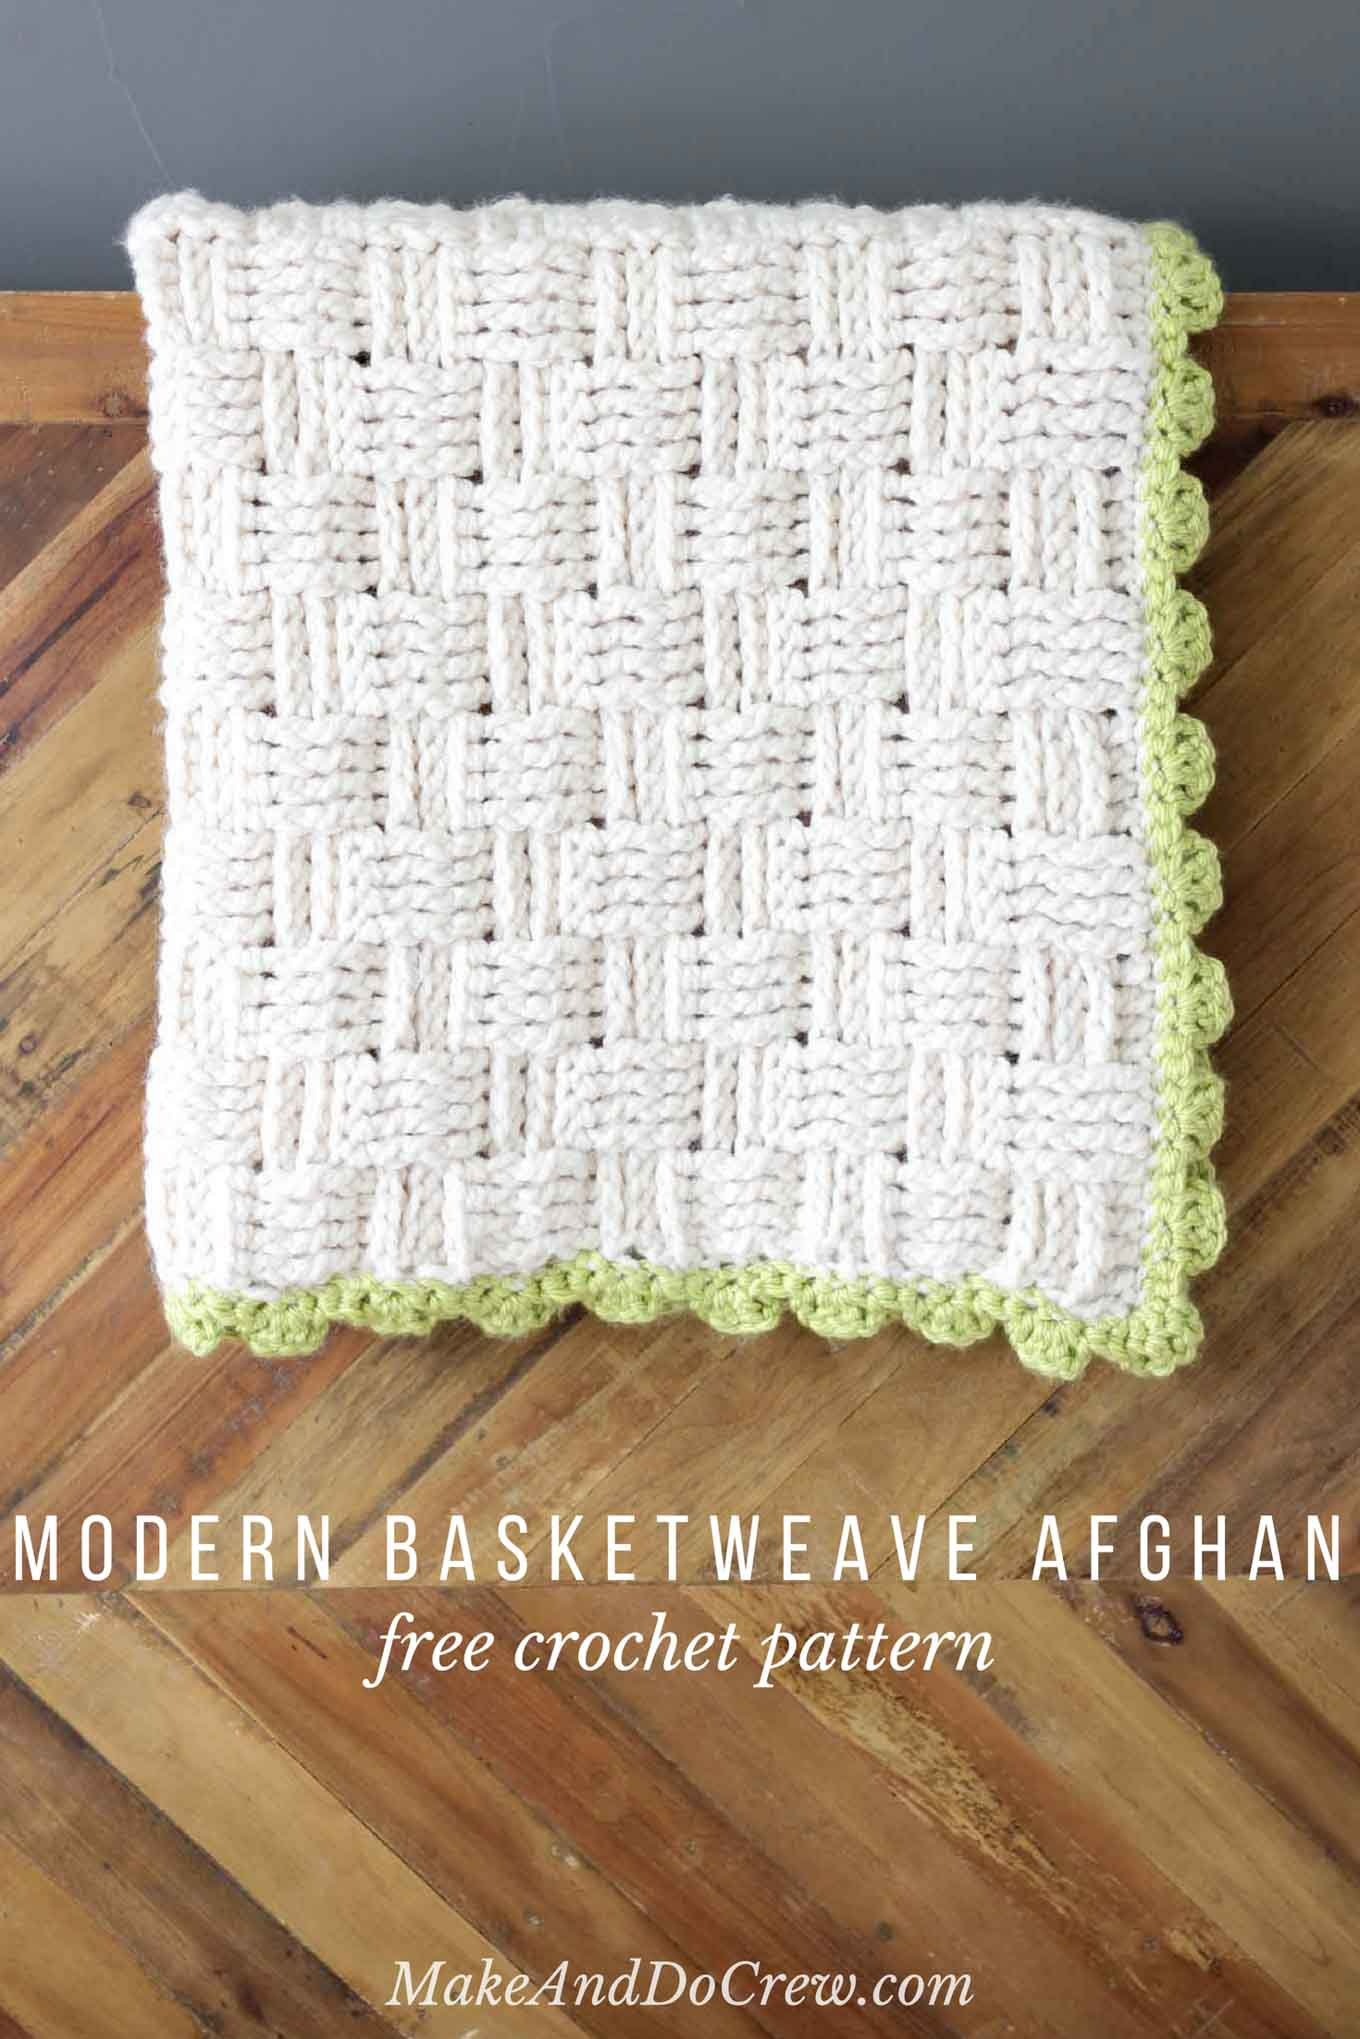 Hooked On Crochet Free Patterns Modern Crochet Basket Weave Blanket Free Pattern